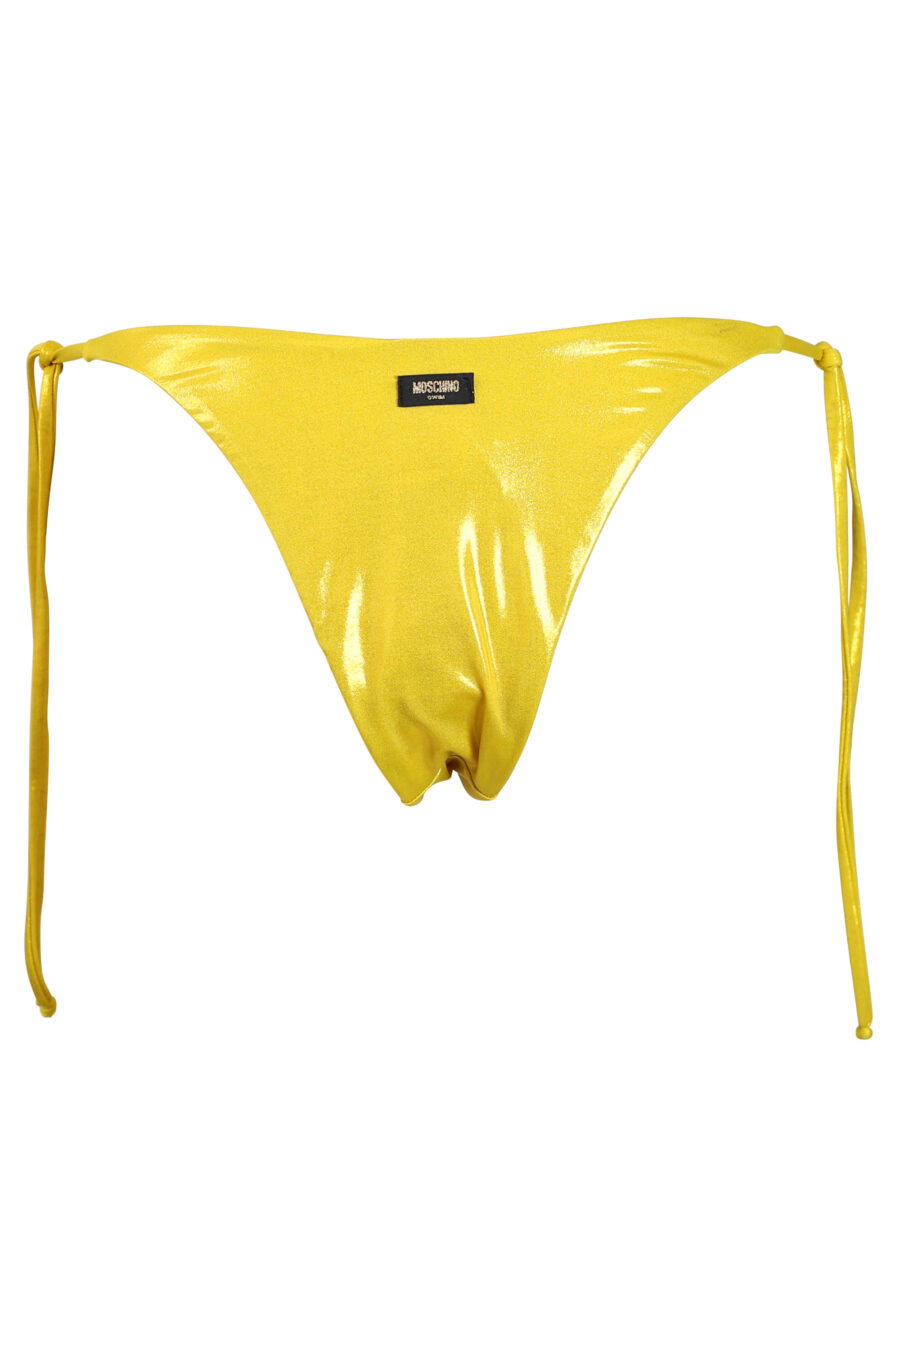 Leuchtend gelbe Bikinihose mit seitlicher Bindung - 889316269680 2